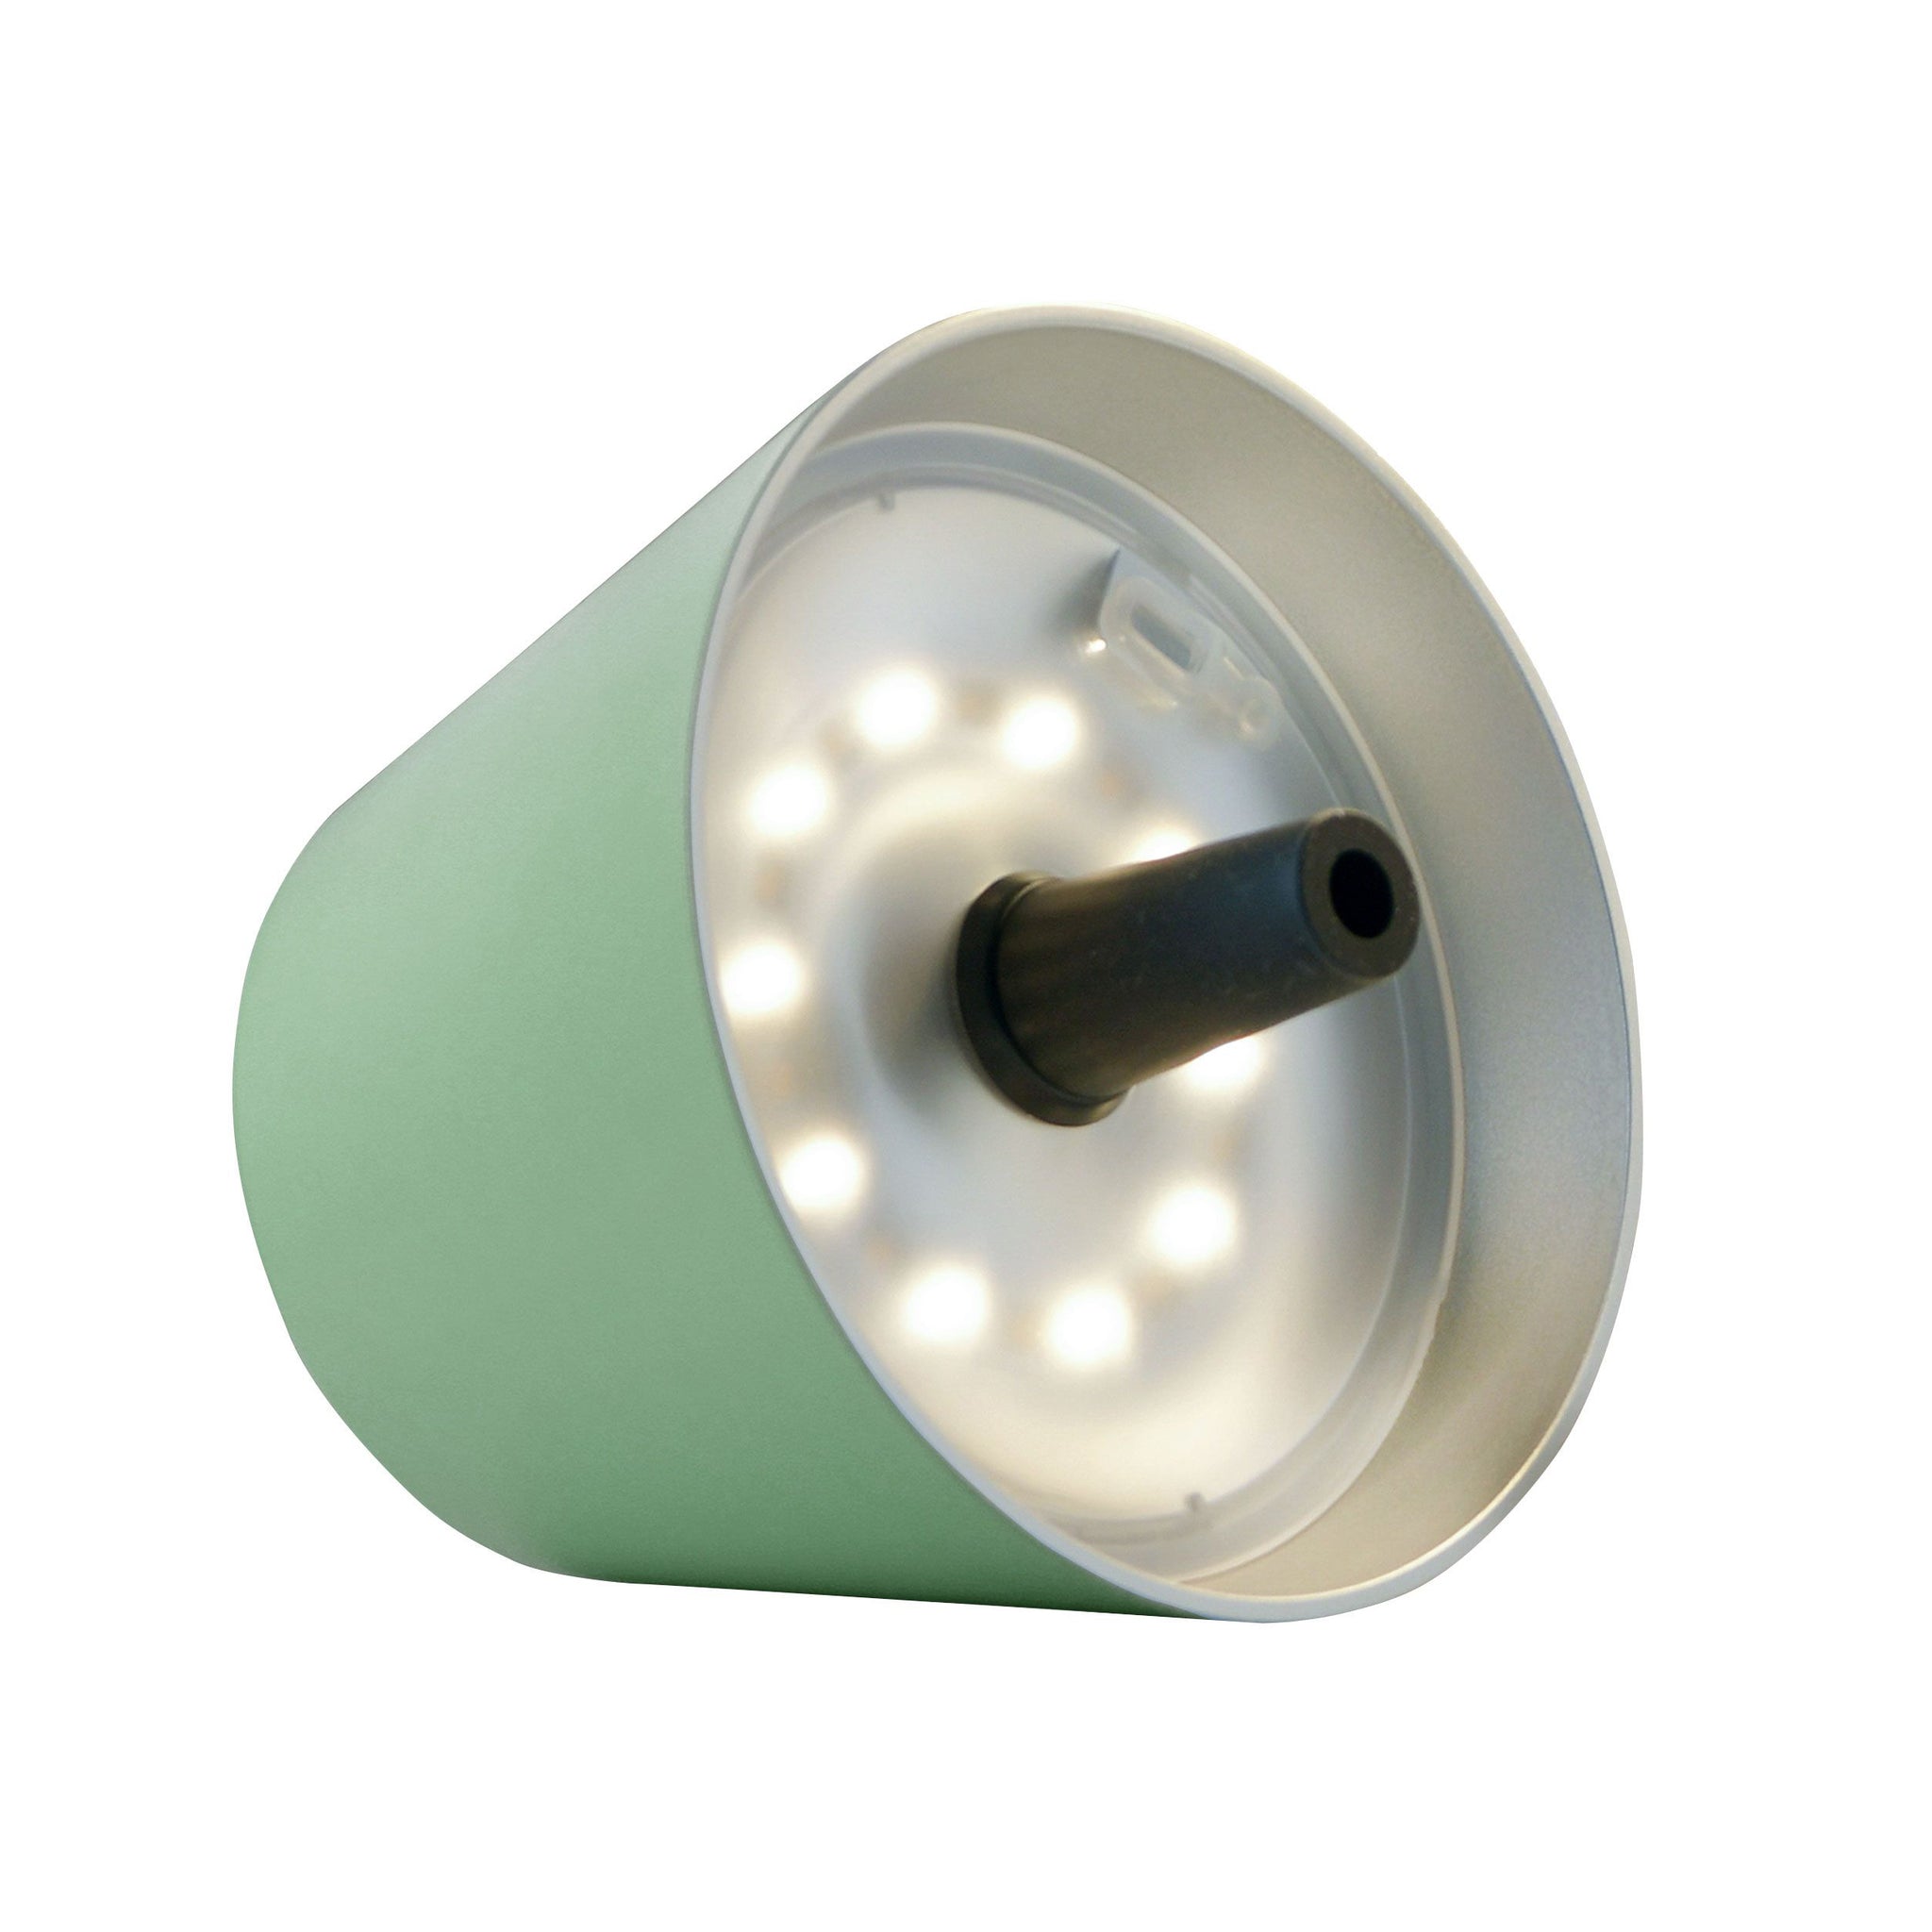 Sompex Top 2.0 Oliv│Oplaadbare Flessenlamp│Buitenverlichting│art. 72523│losse lamp liggend met witte verlichting aan